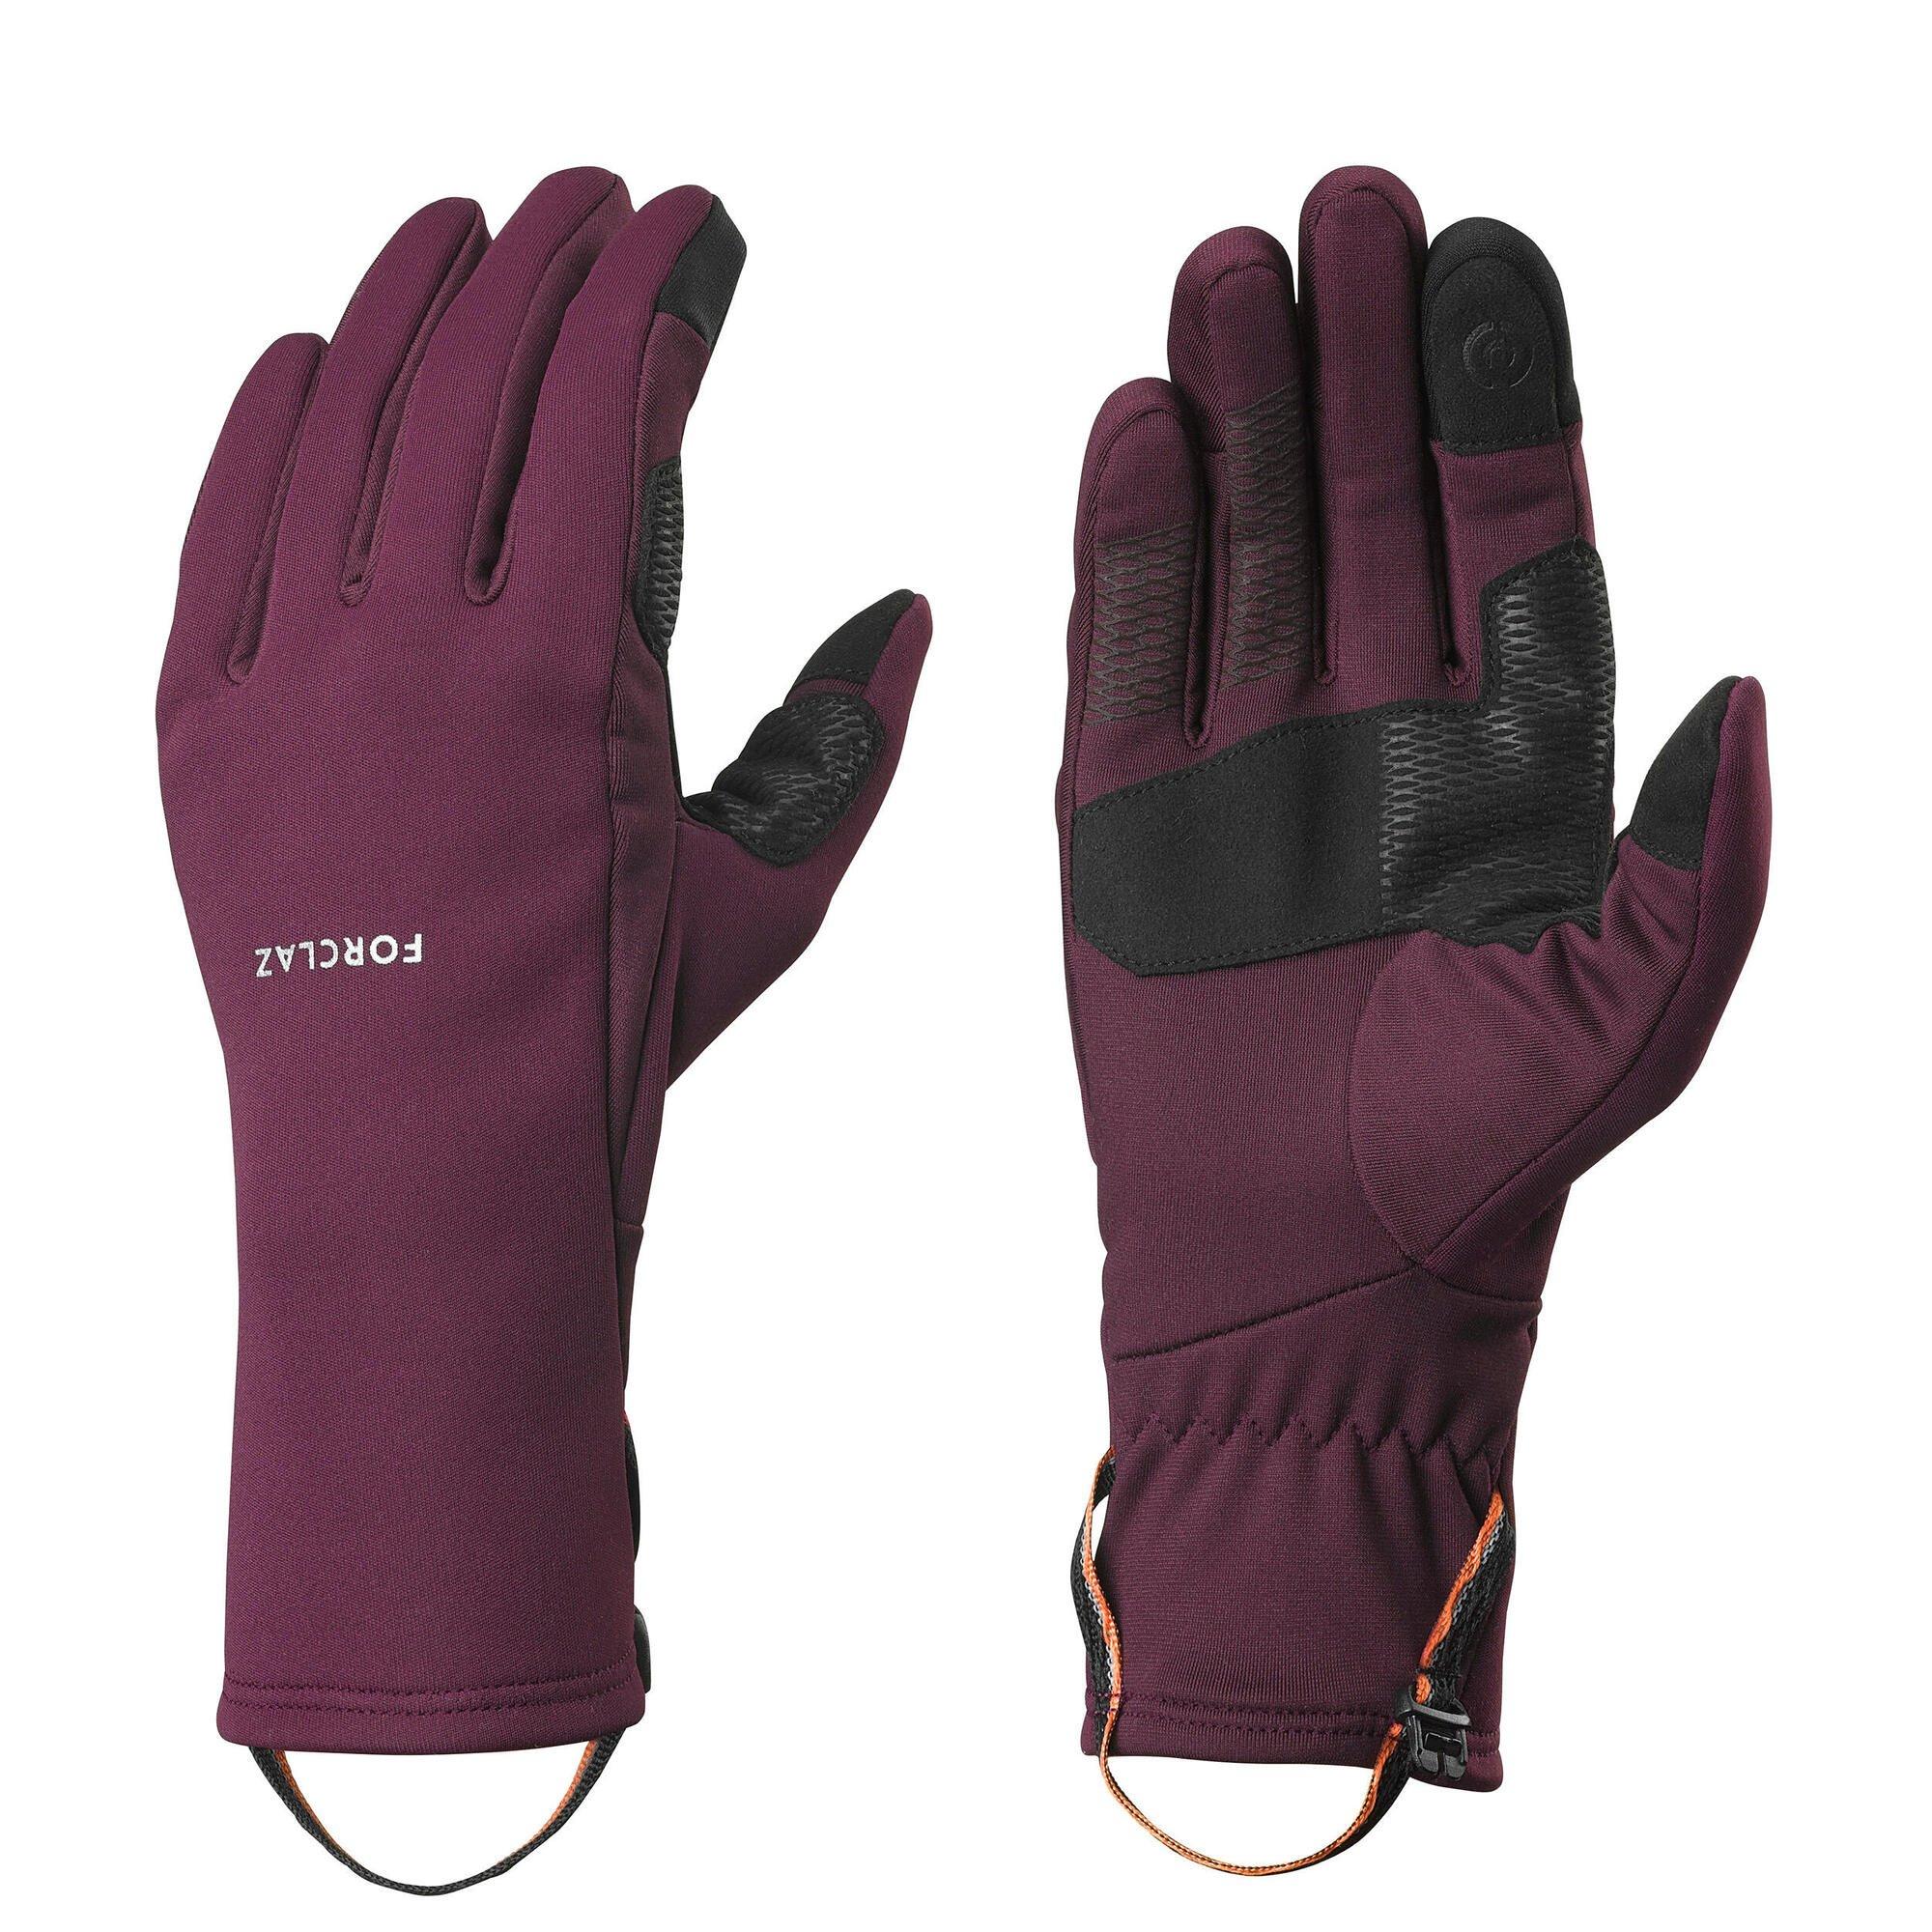 Тактильные эластичные перчатки Decathlon для взрослых для треккинга в горах Forclaz, коричневый